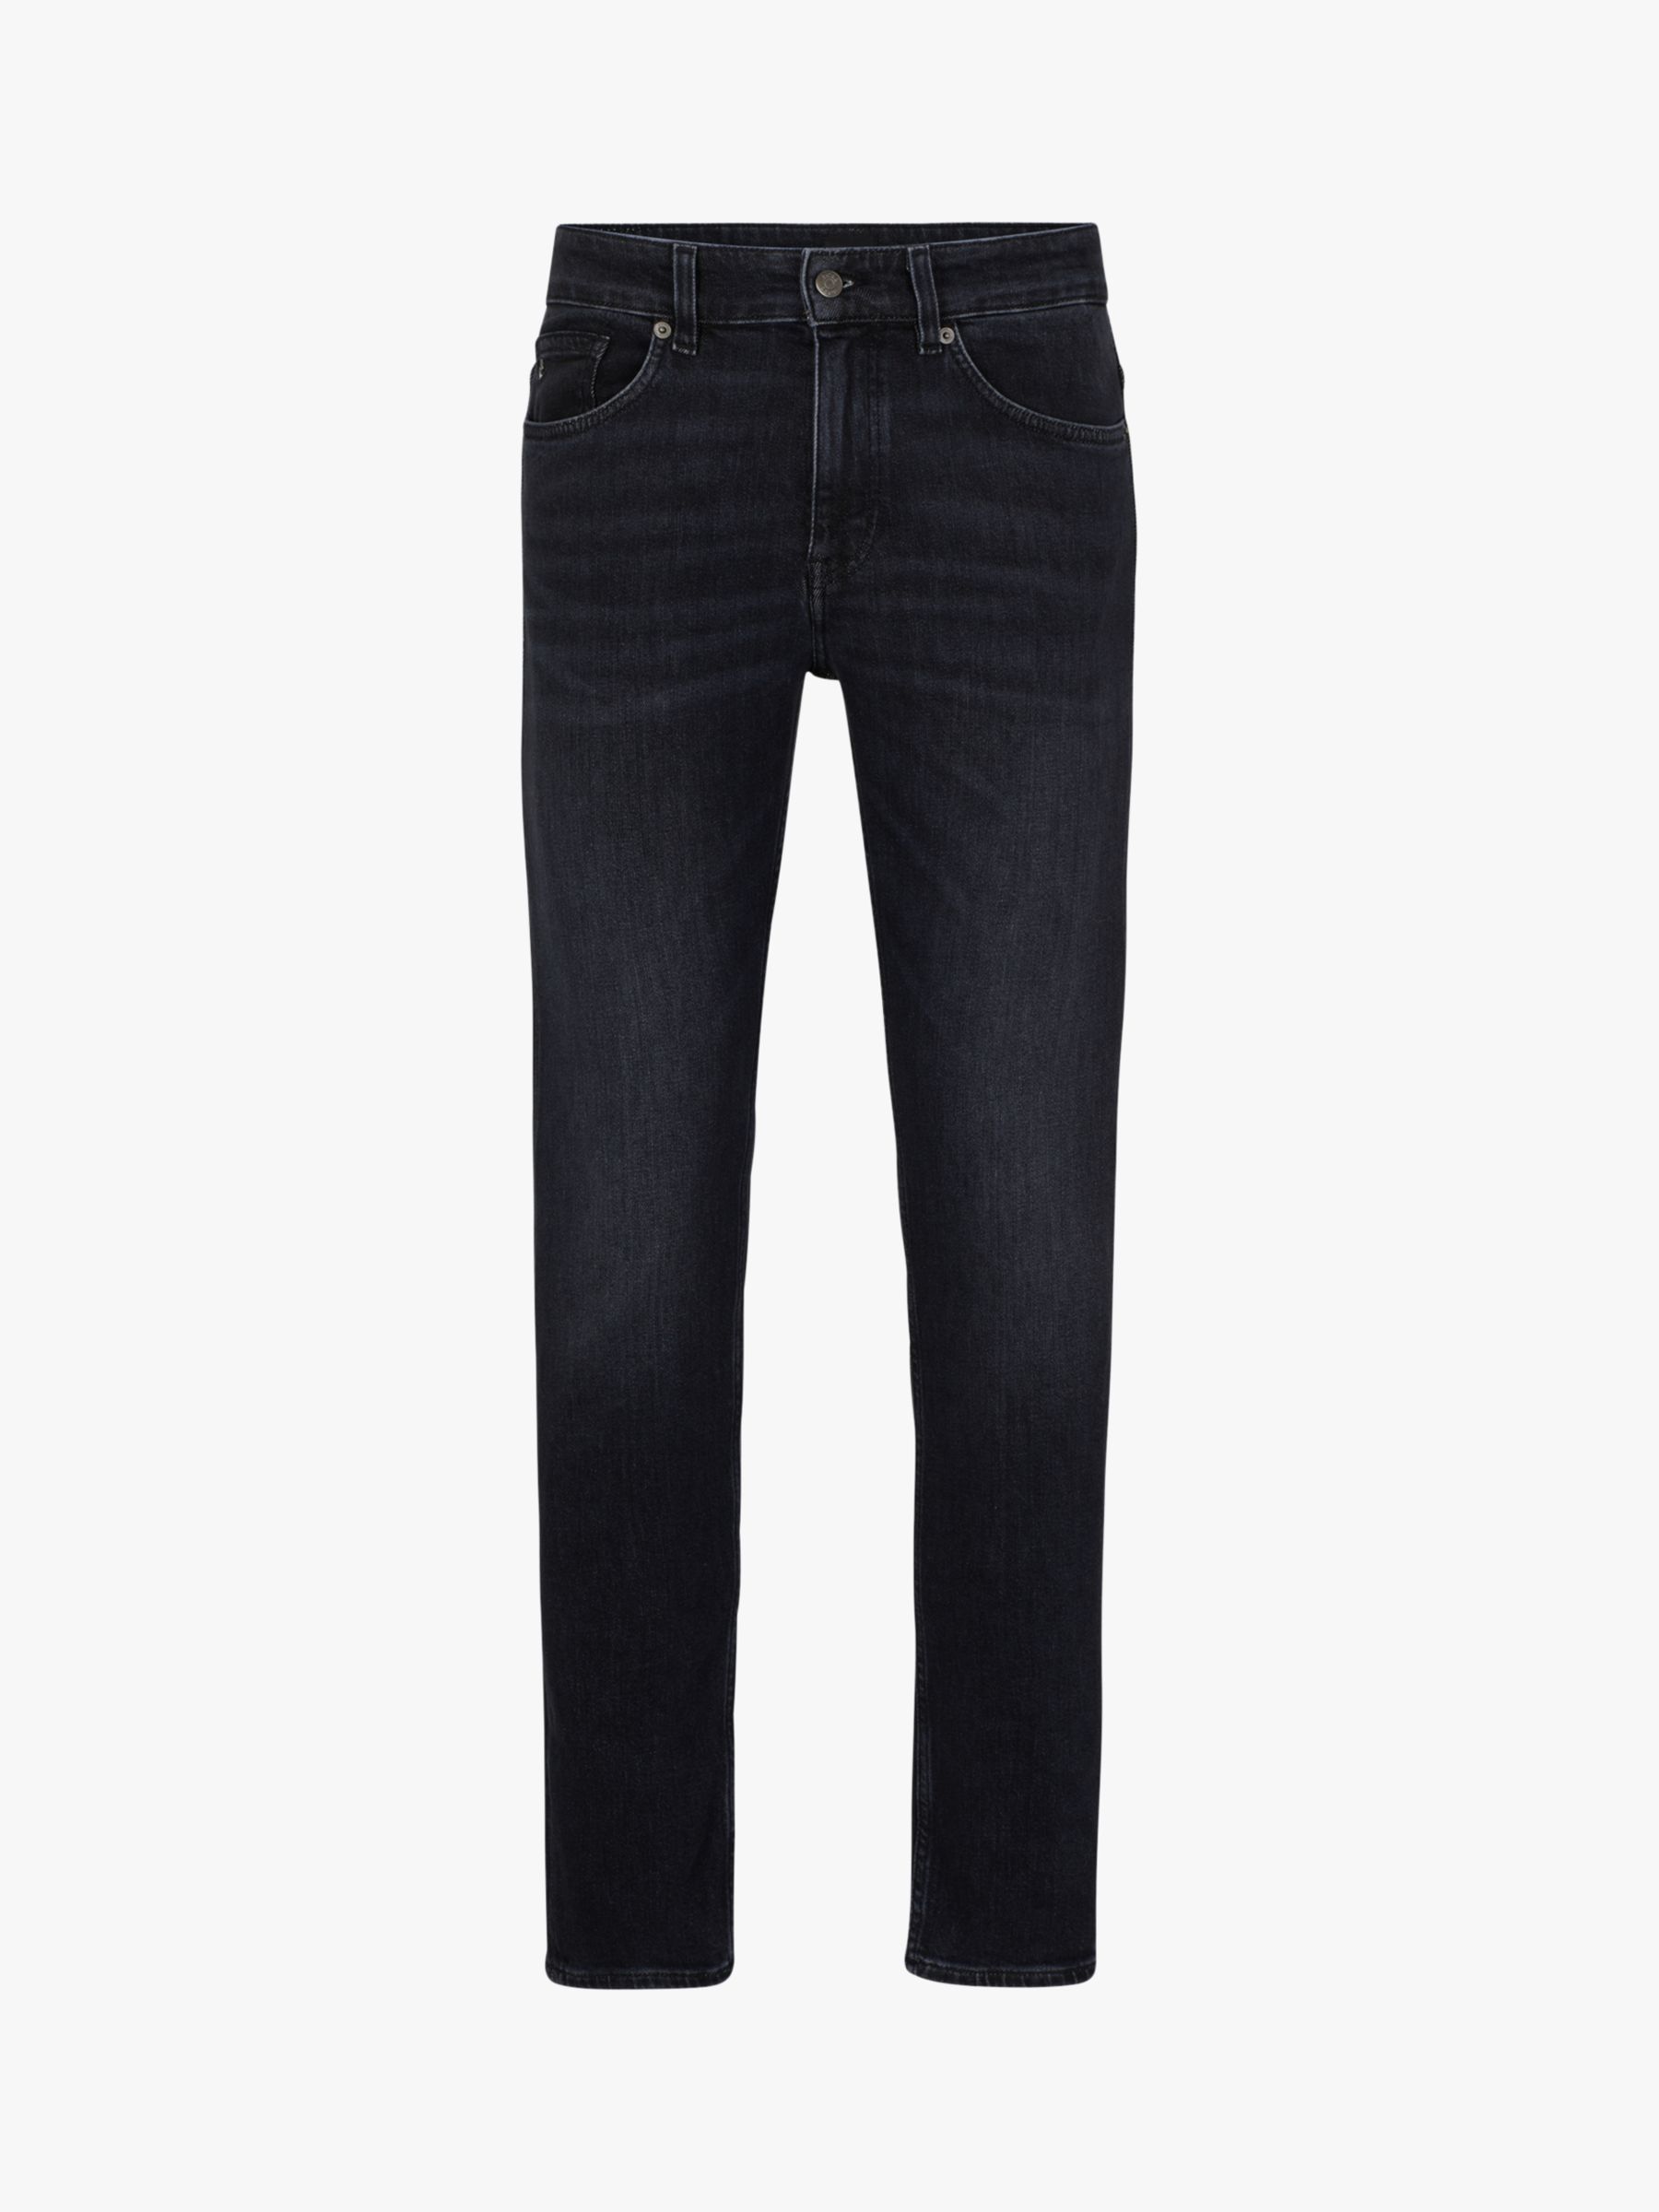 BOSS Delano Slim Fit Jeans, Grey at John Lewis & Partners